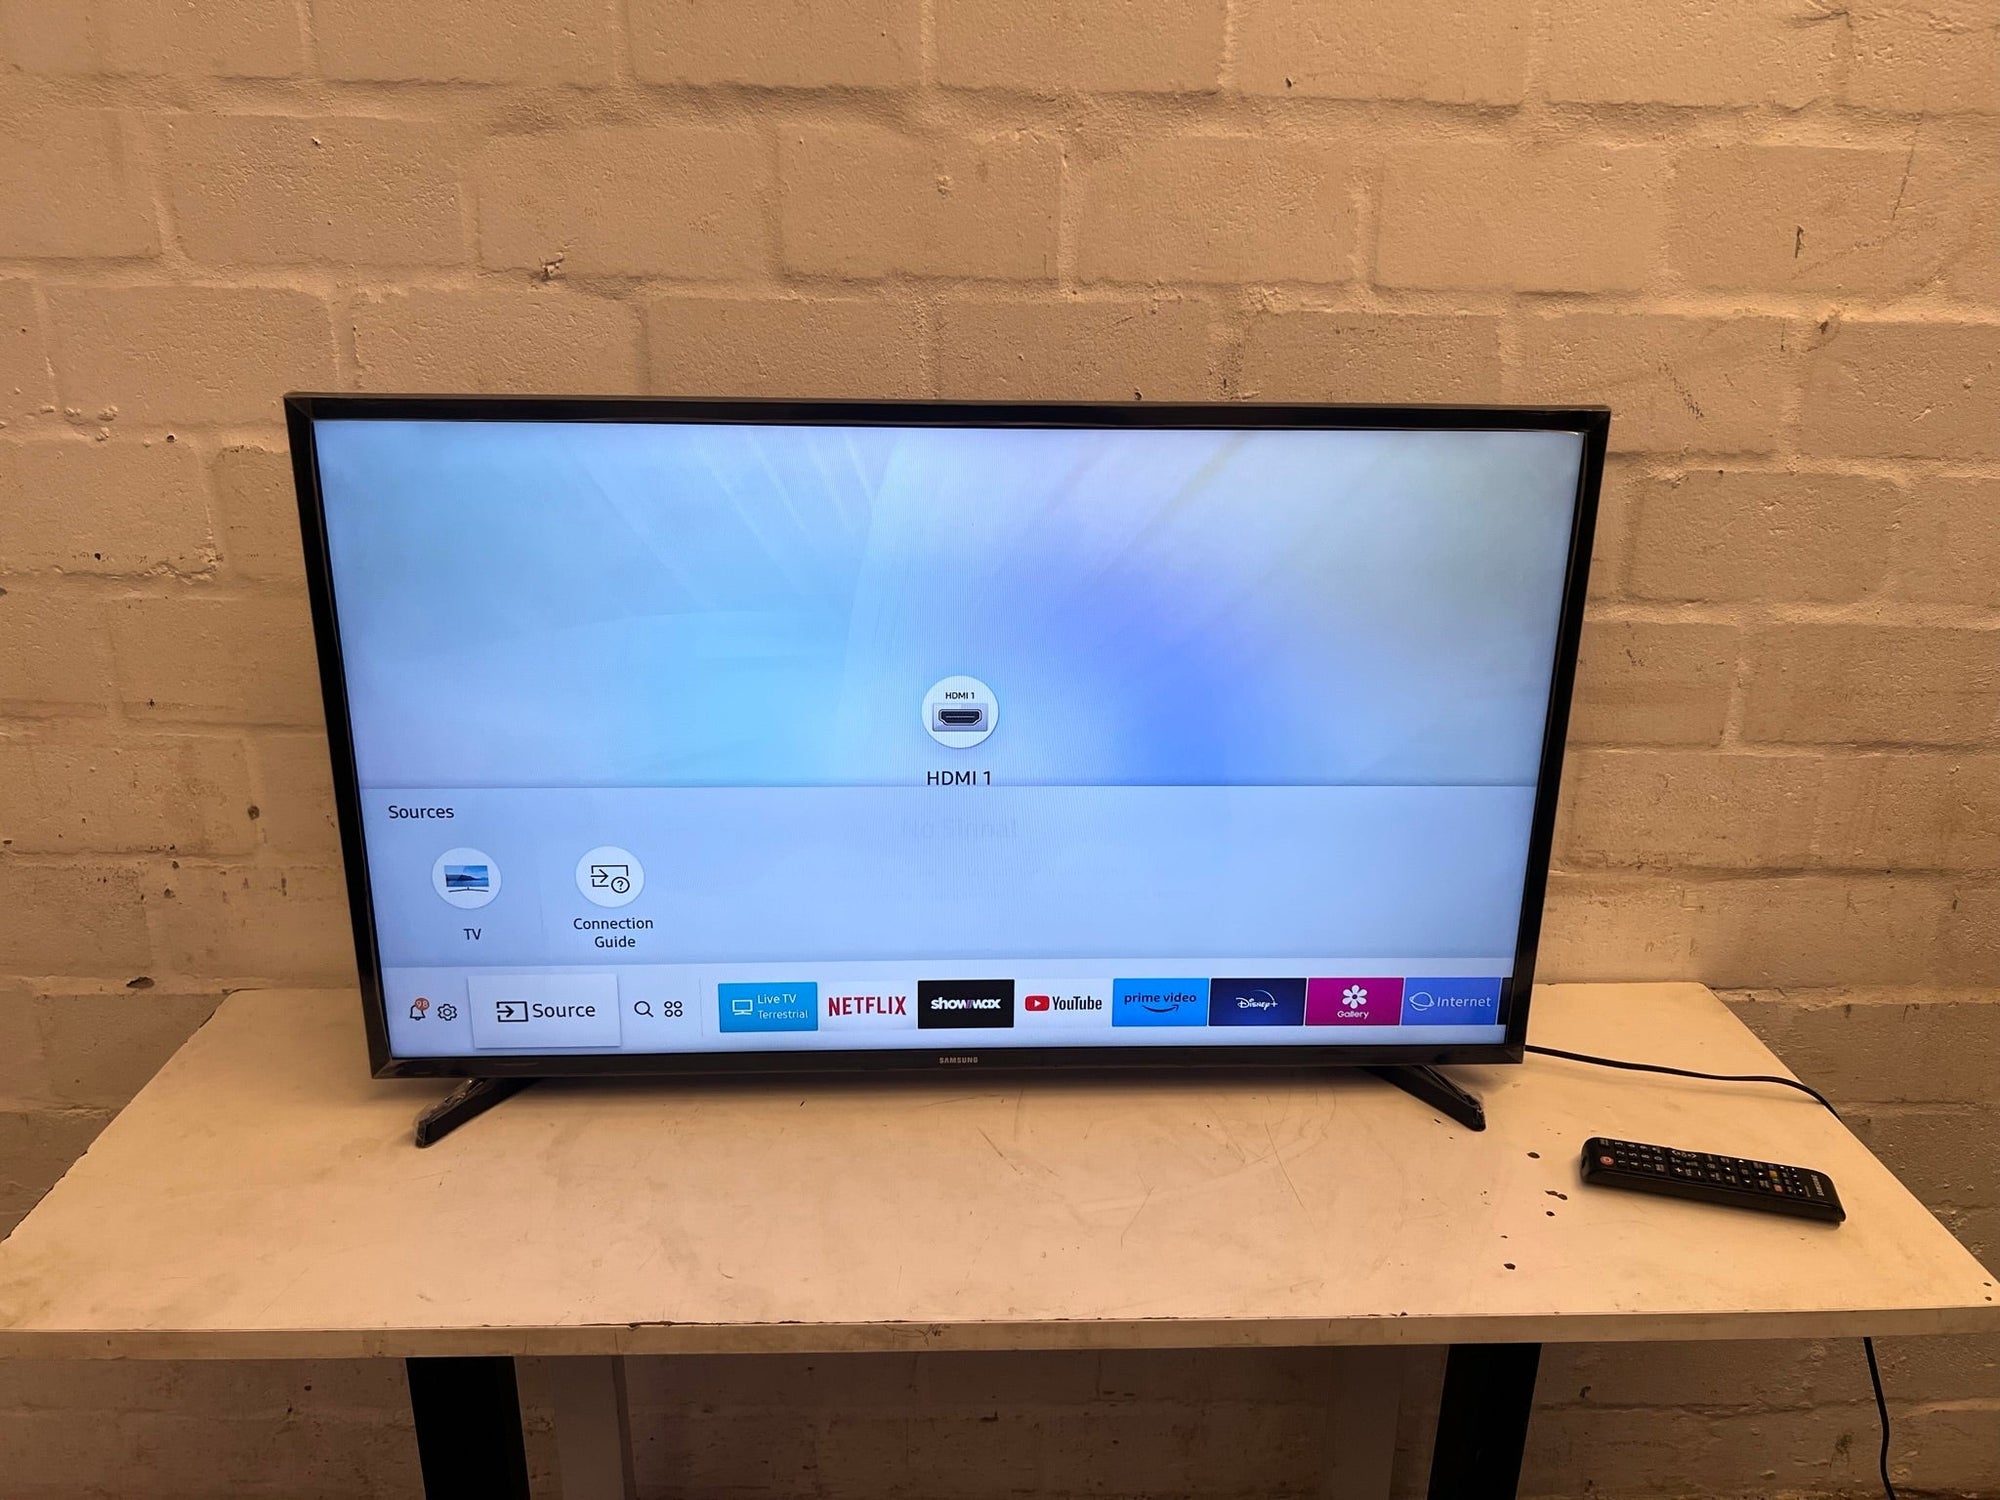 Samsung HD Smart TV 40’ N5300 Series 5